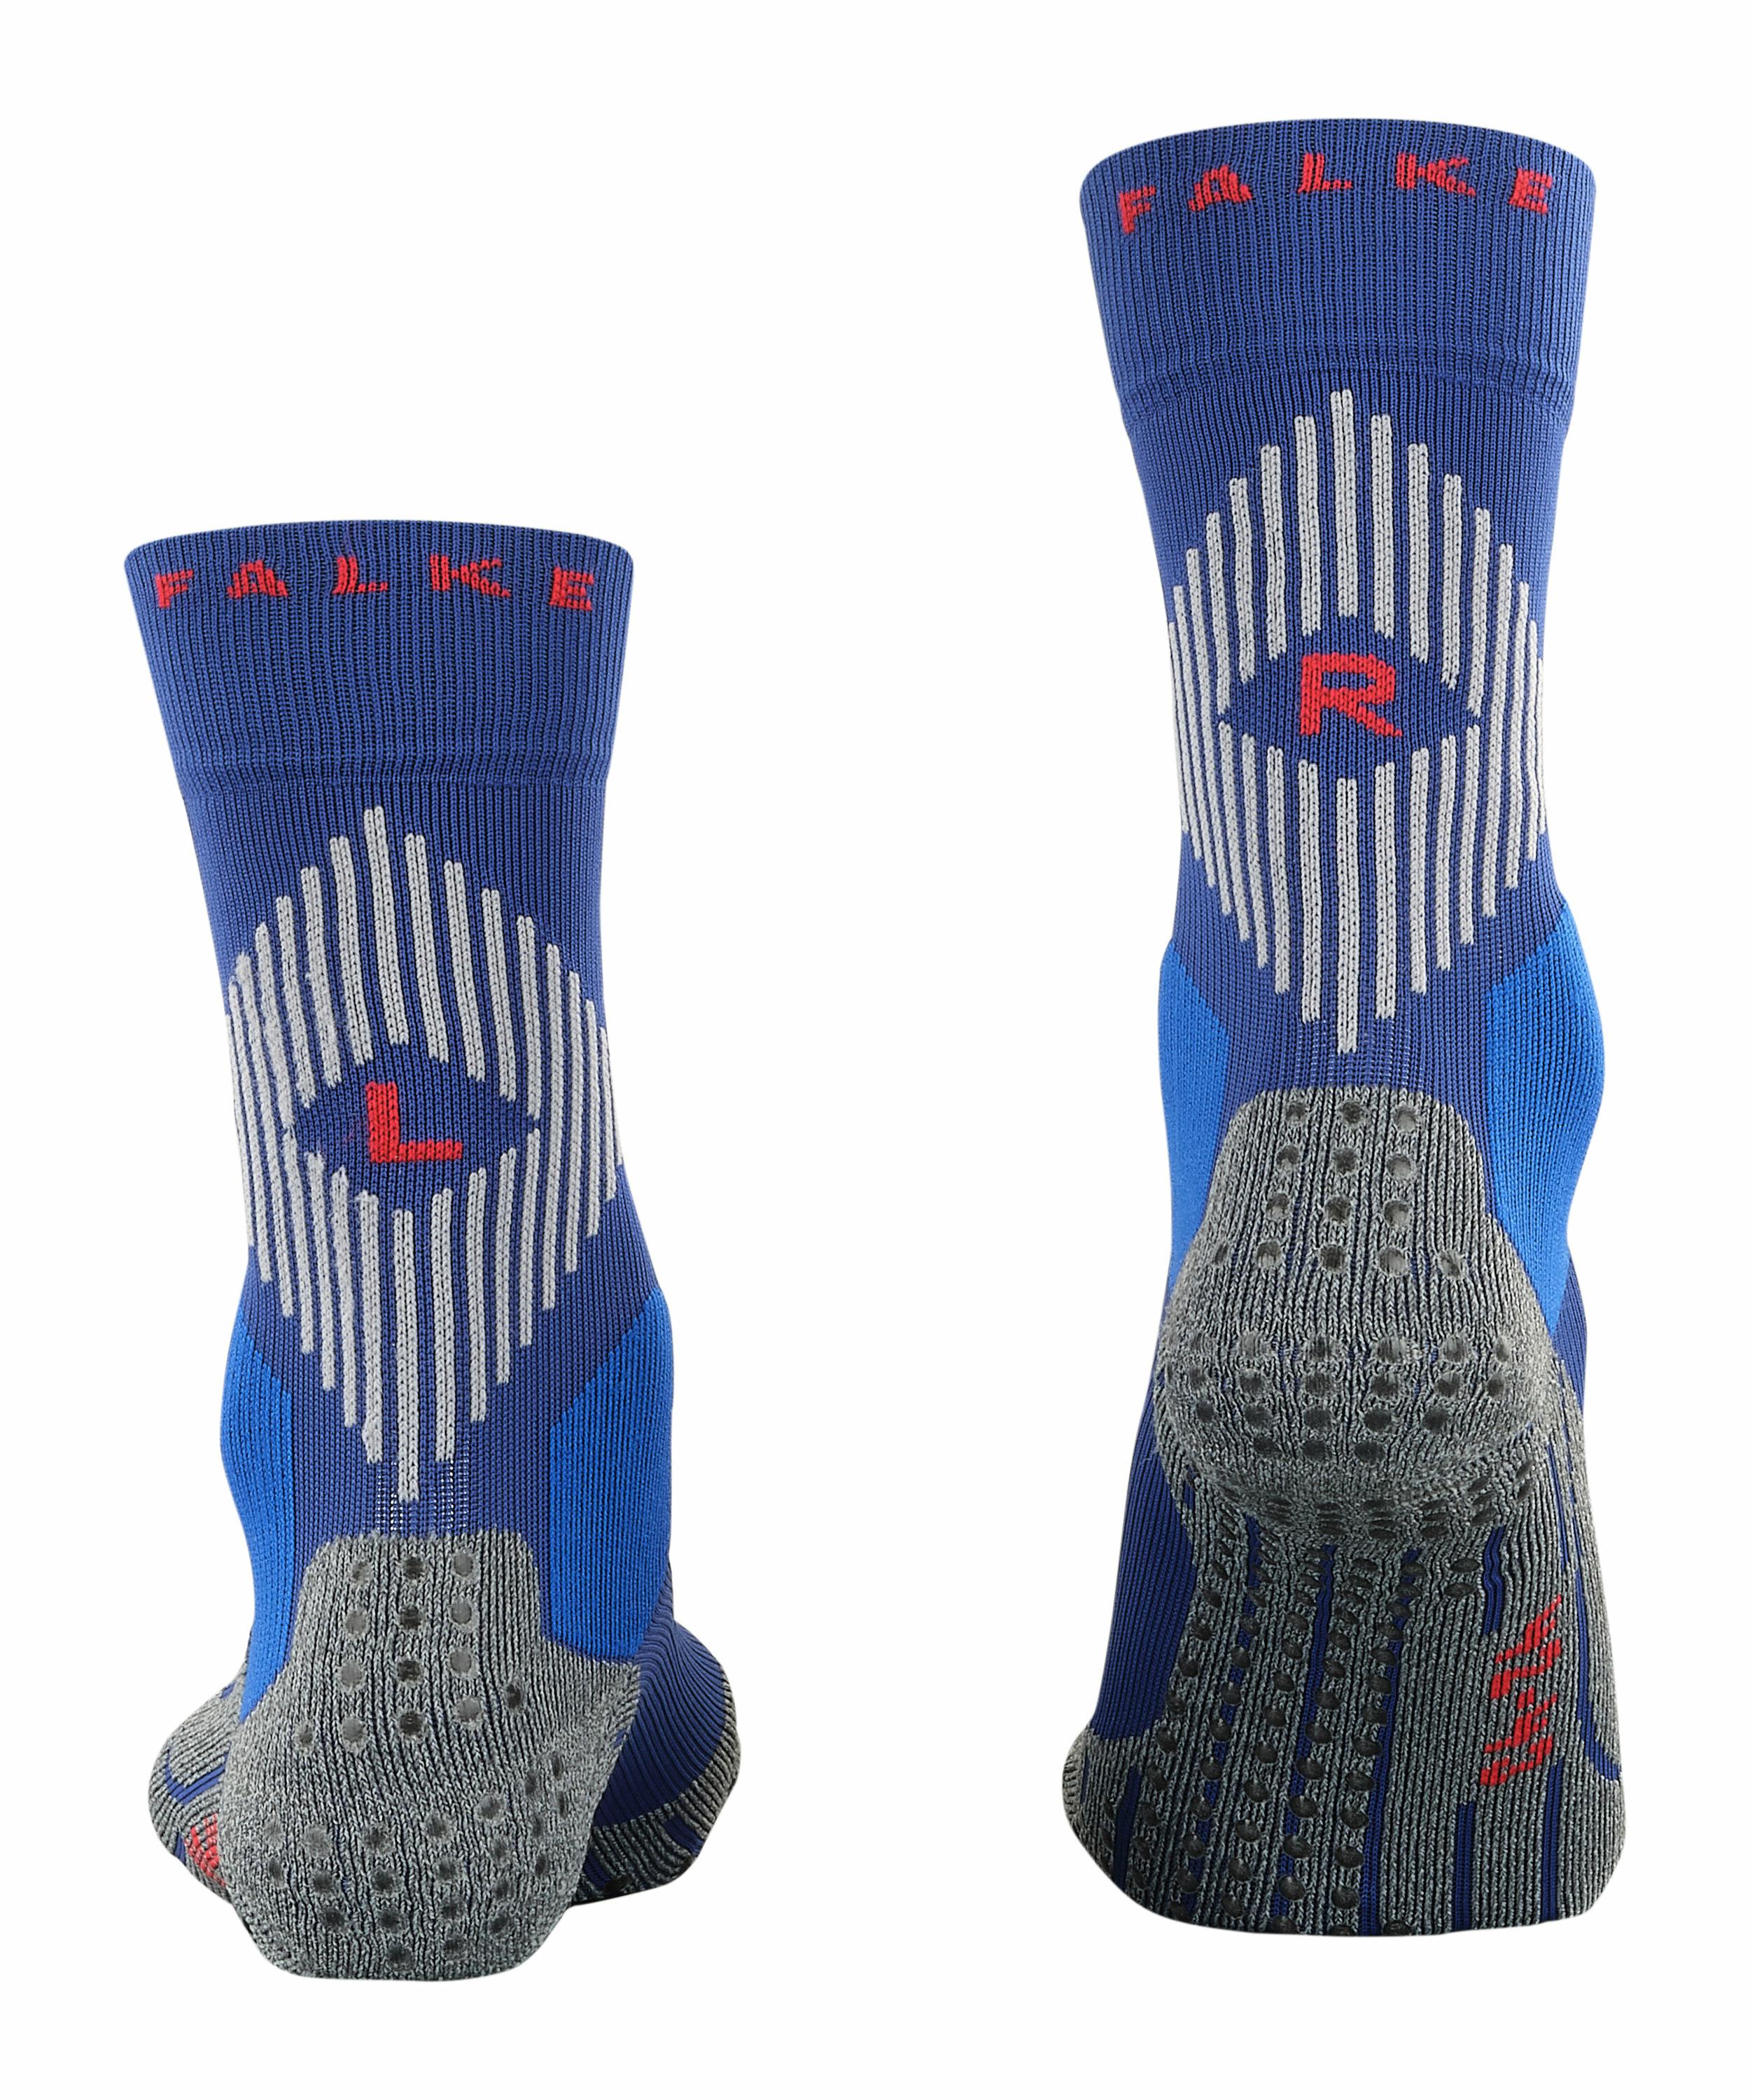 FALKE 4GRIP Stabilizing Socken, 46-48, Blau, 16030-645105 günstig online kaufen